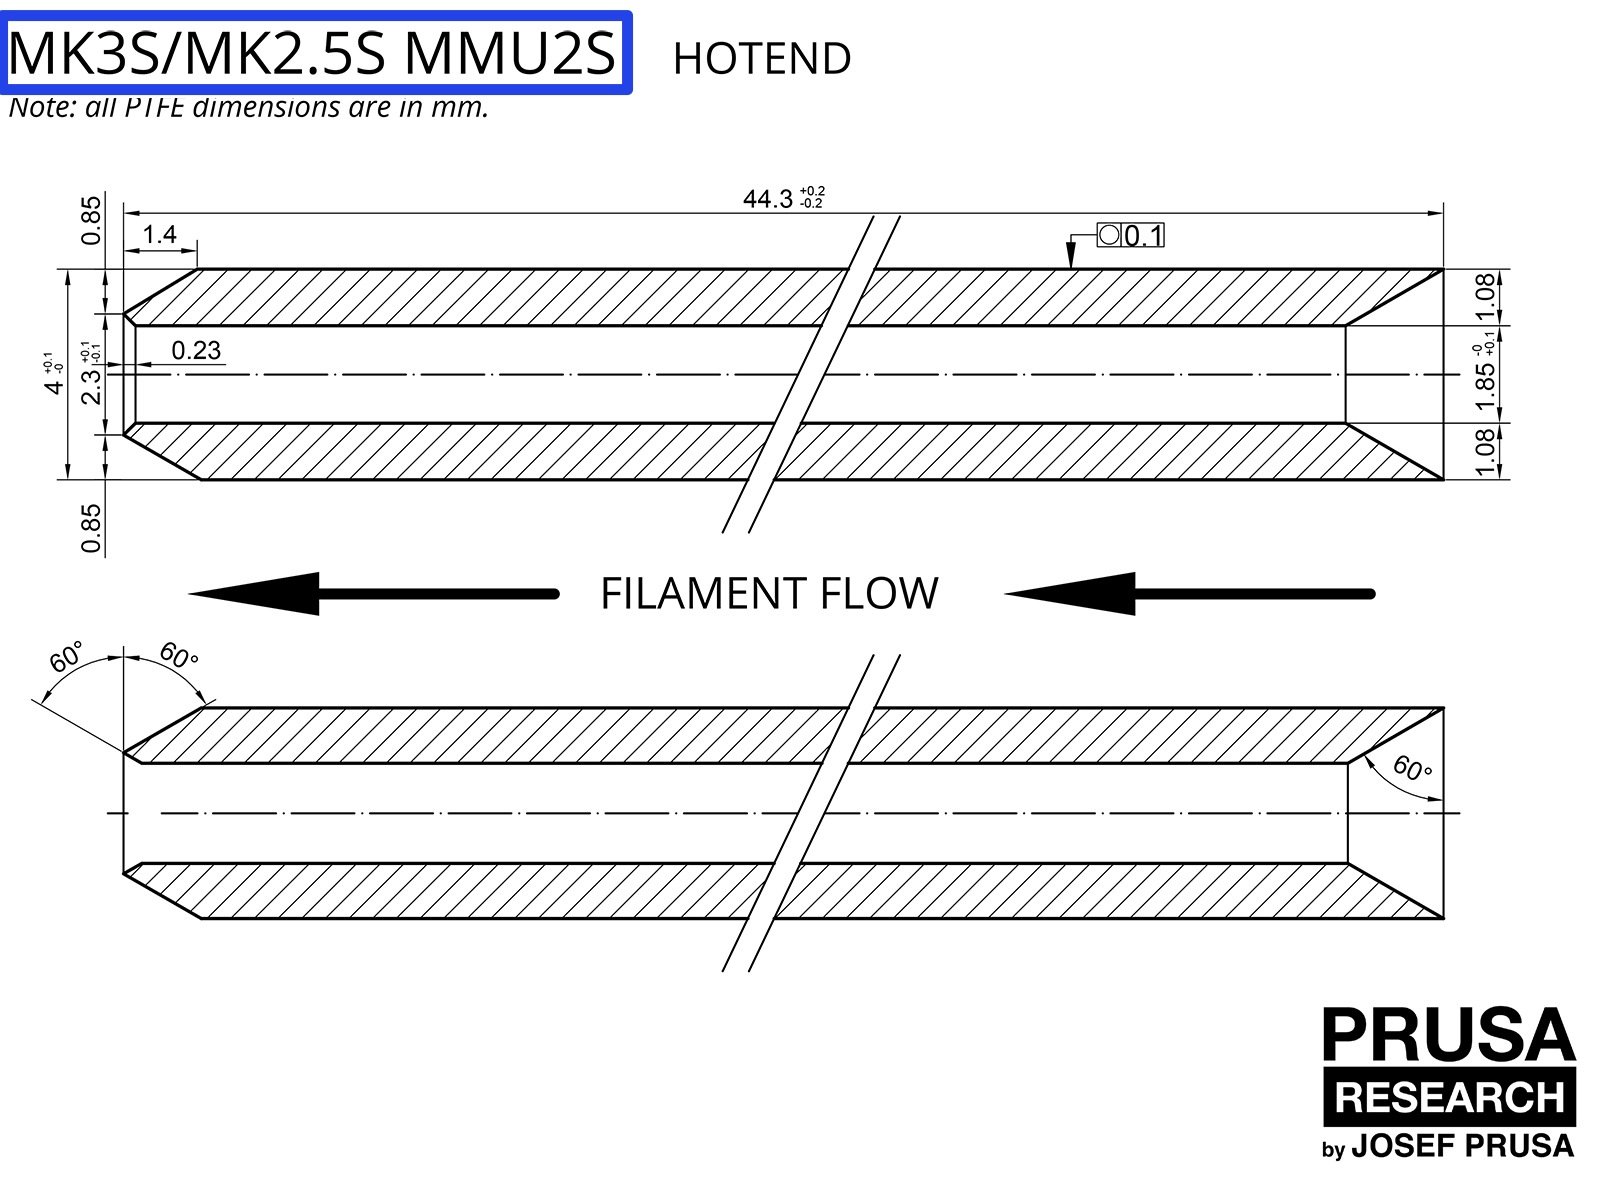 OBSOLETO: PTFE per MK3S/MK2.5S MMU2S (parte 1)